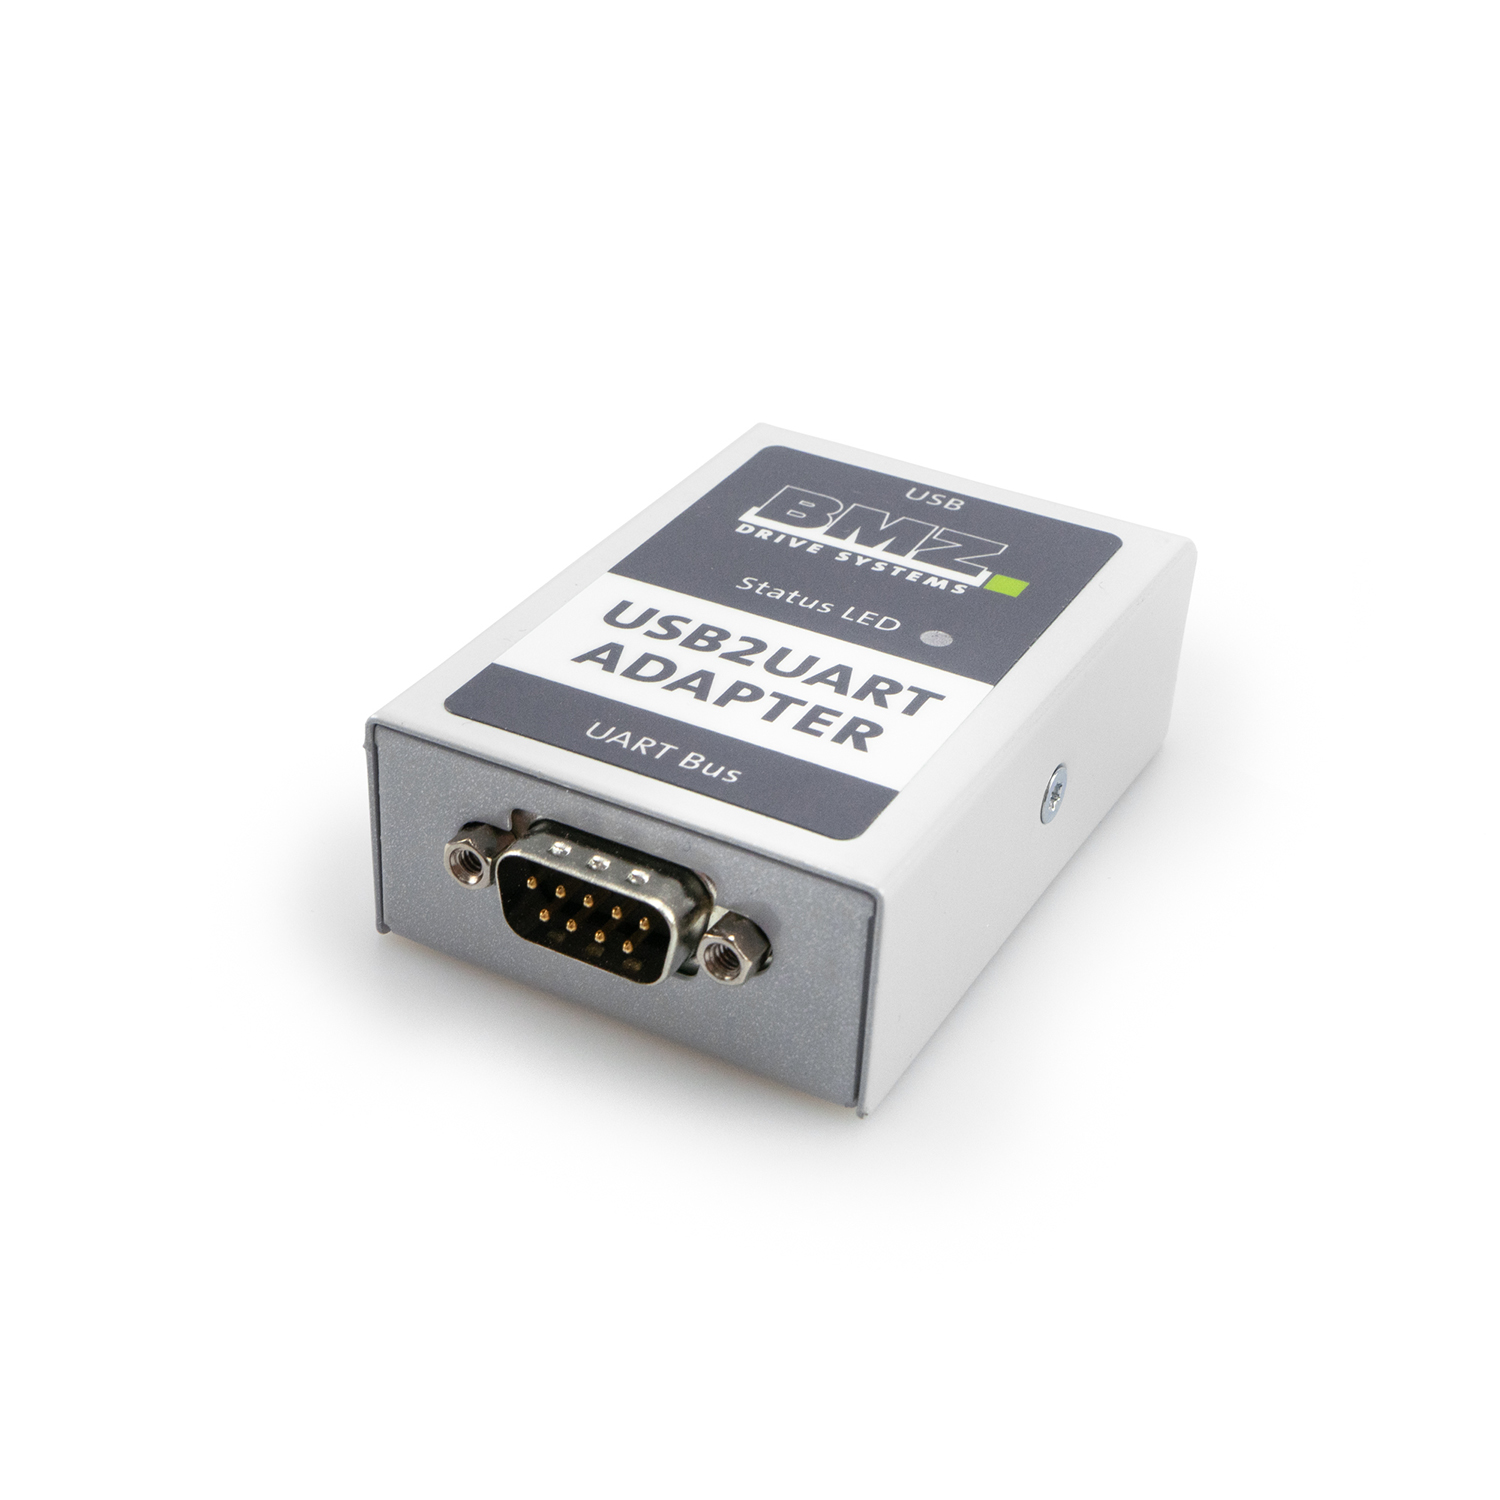 Adapterbox USB2UART